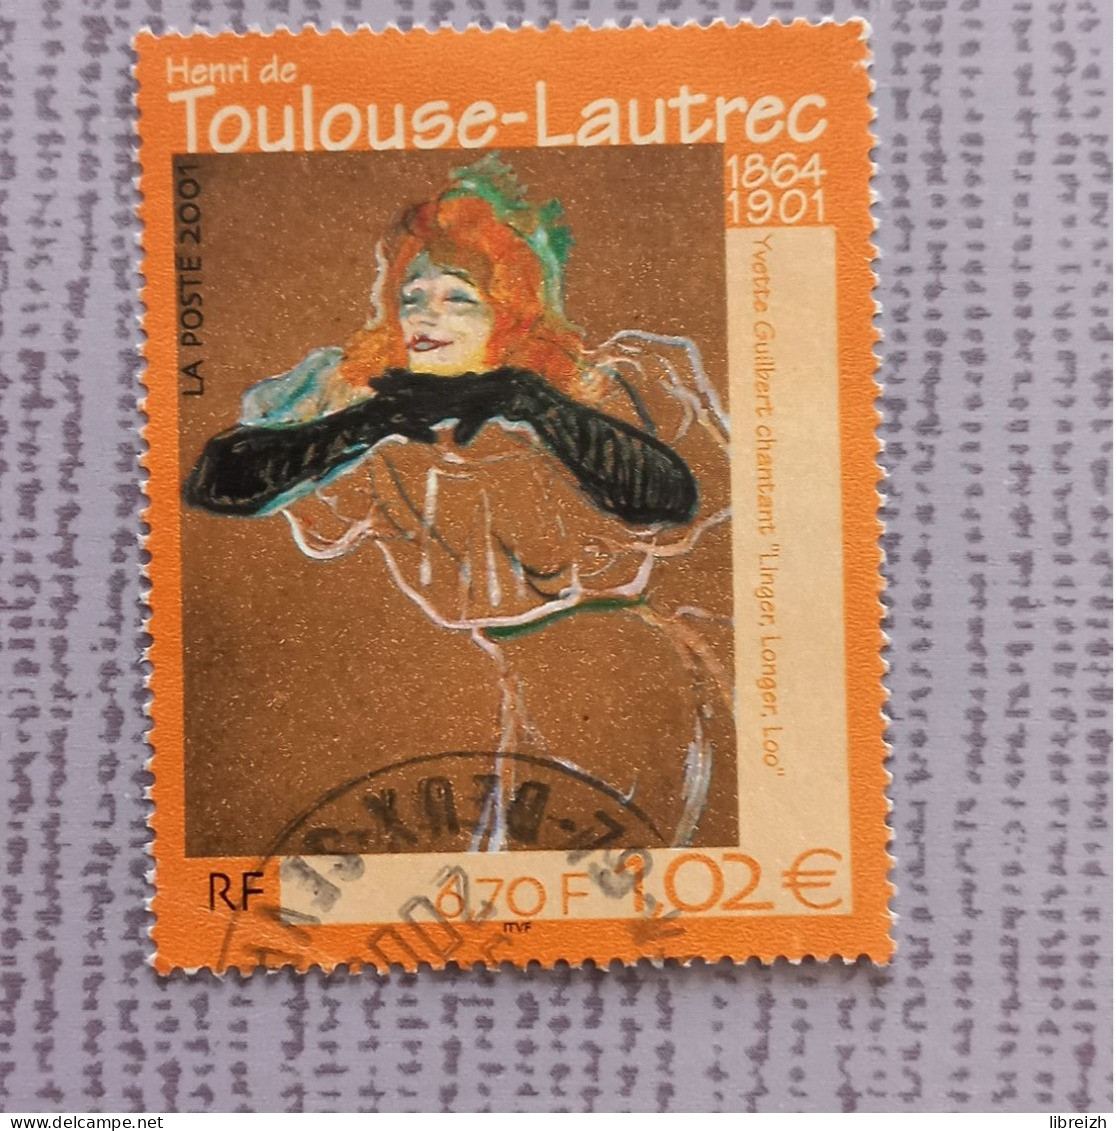 Henri De Toulouse-Lautrec N° 3421  Année 2001 - Usados